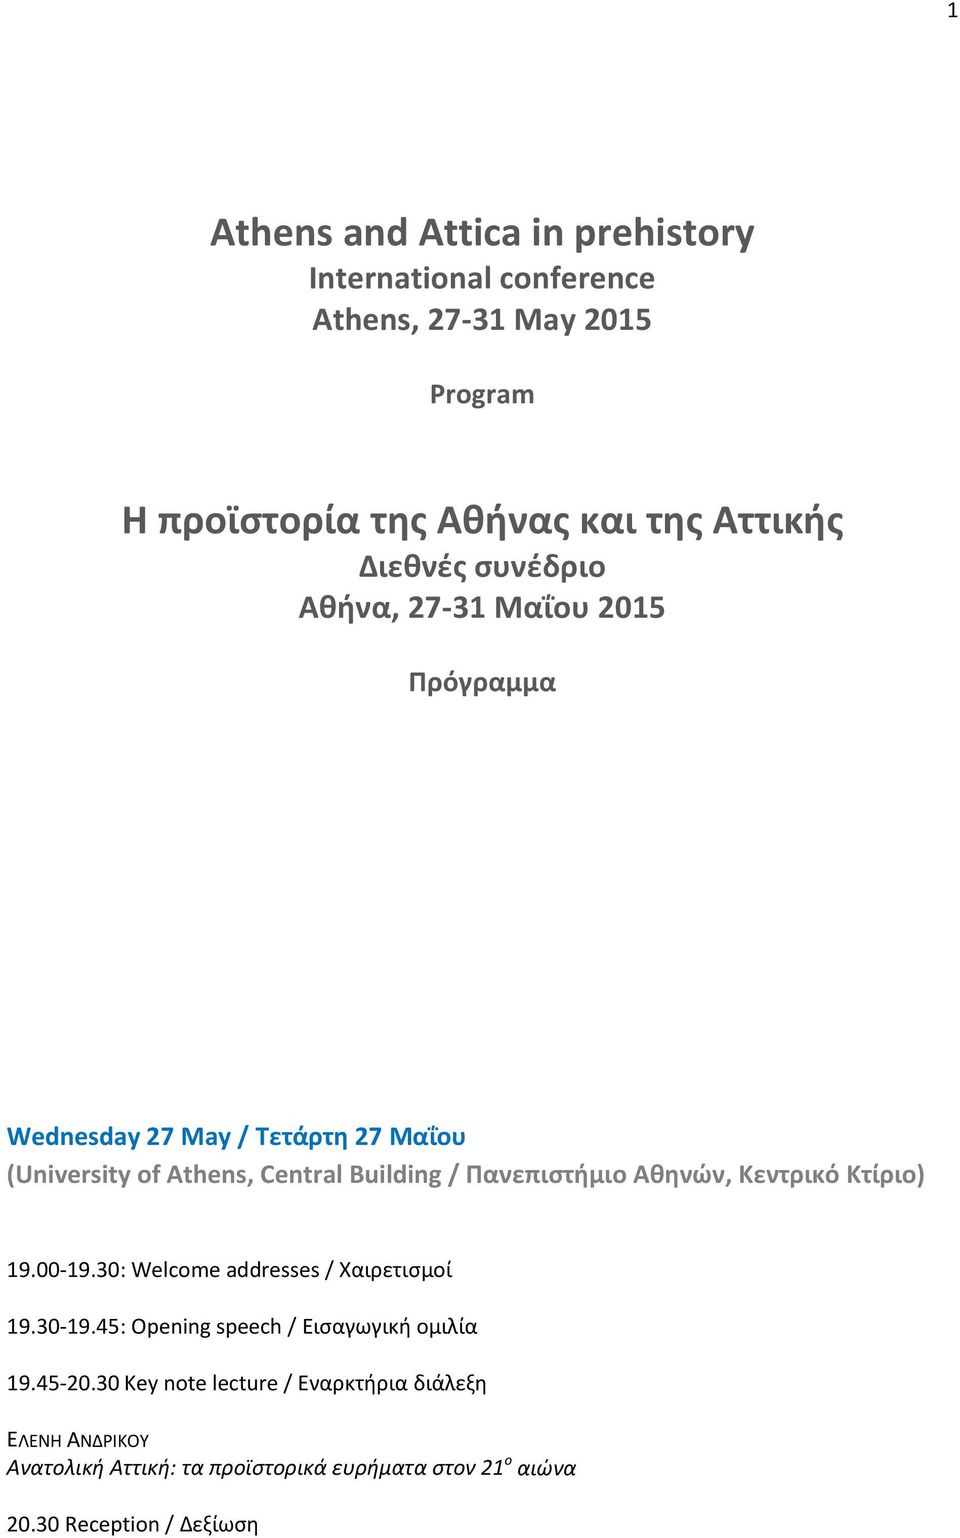 Πανεπιστήμιο Αθηνών, Κεντρικό Κτίριο) 19.00-19.30: Welcome addresses / Χαιρετισμοί 19.30-19.45: Opening speech / Εισαγωγική ομιλία 19.